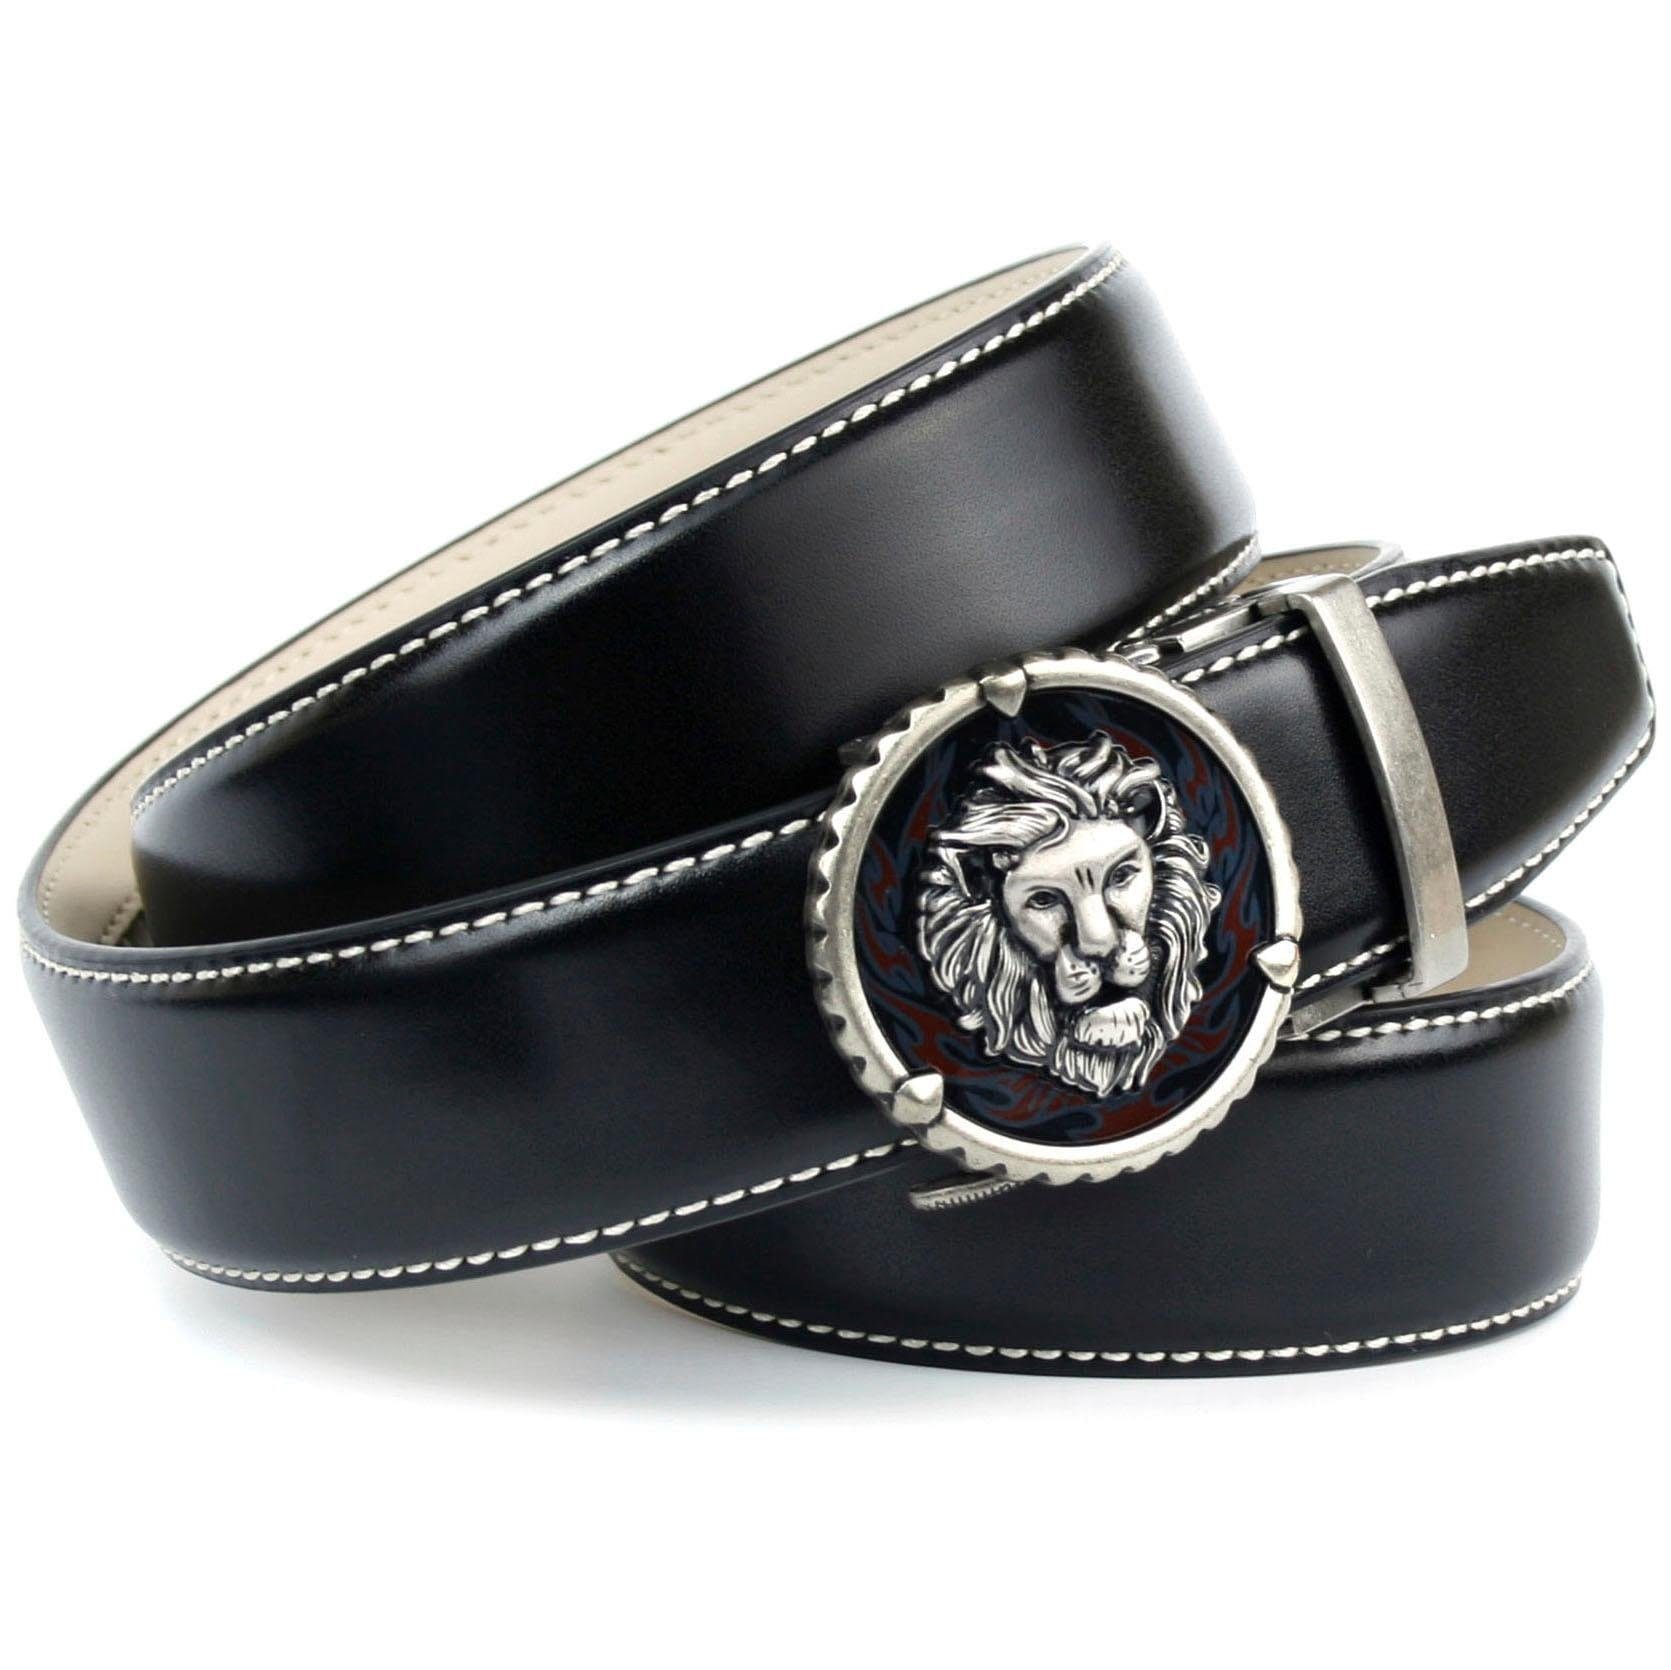 Anthoni Crown Ledergürtel, in schwarz OTTO Kontrast online weiß bei in mit shoppen Stitching